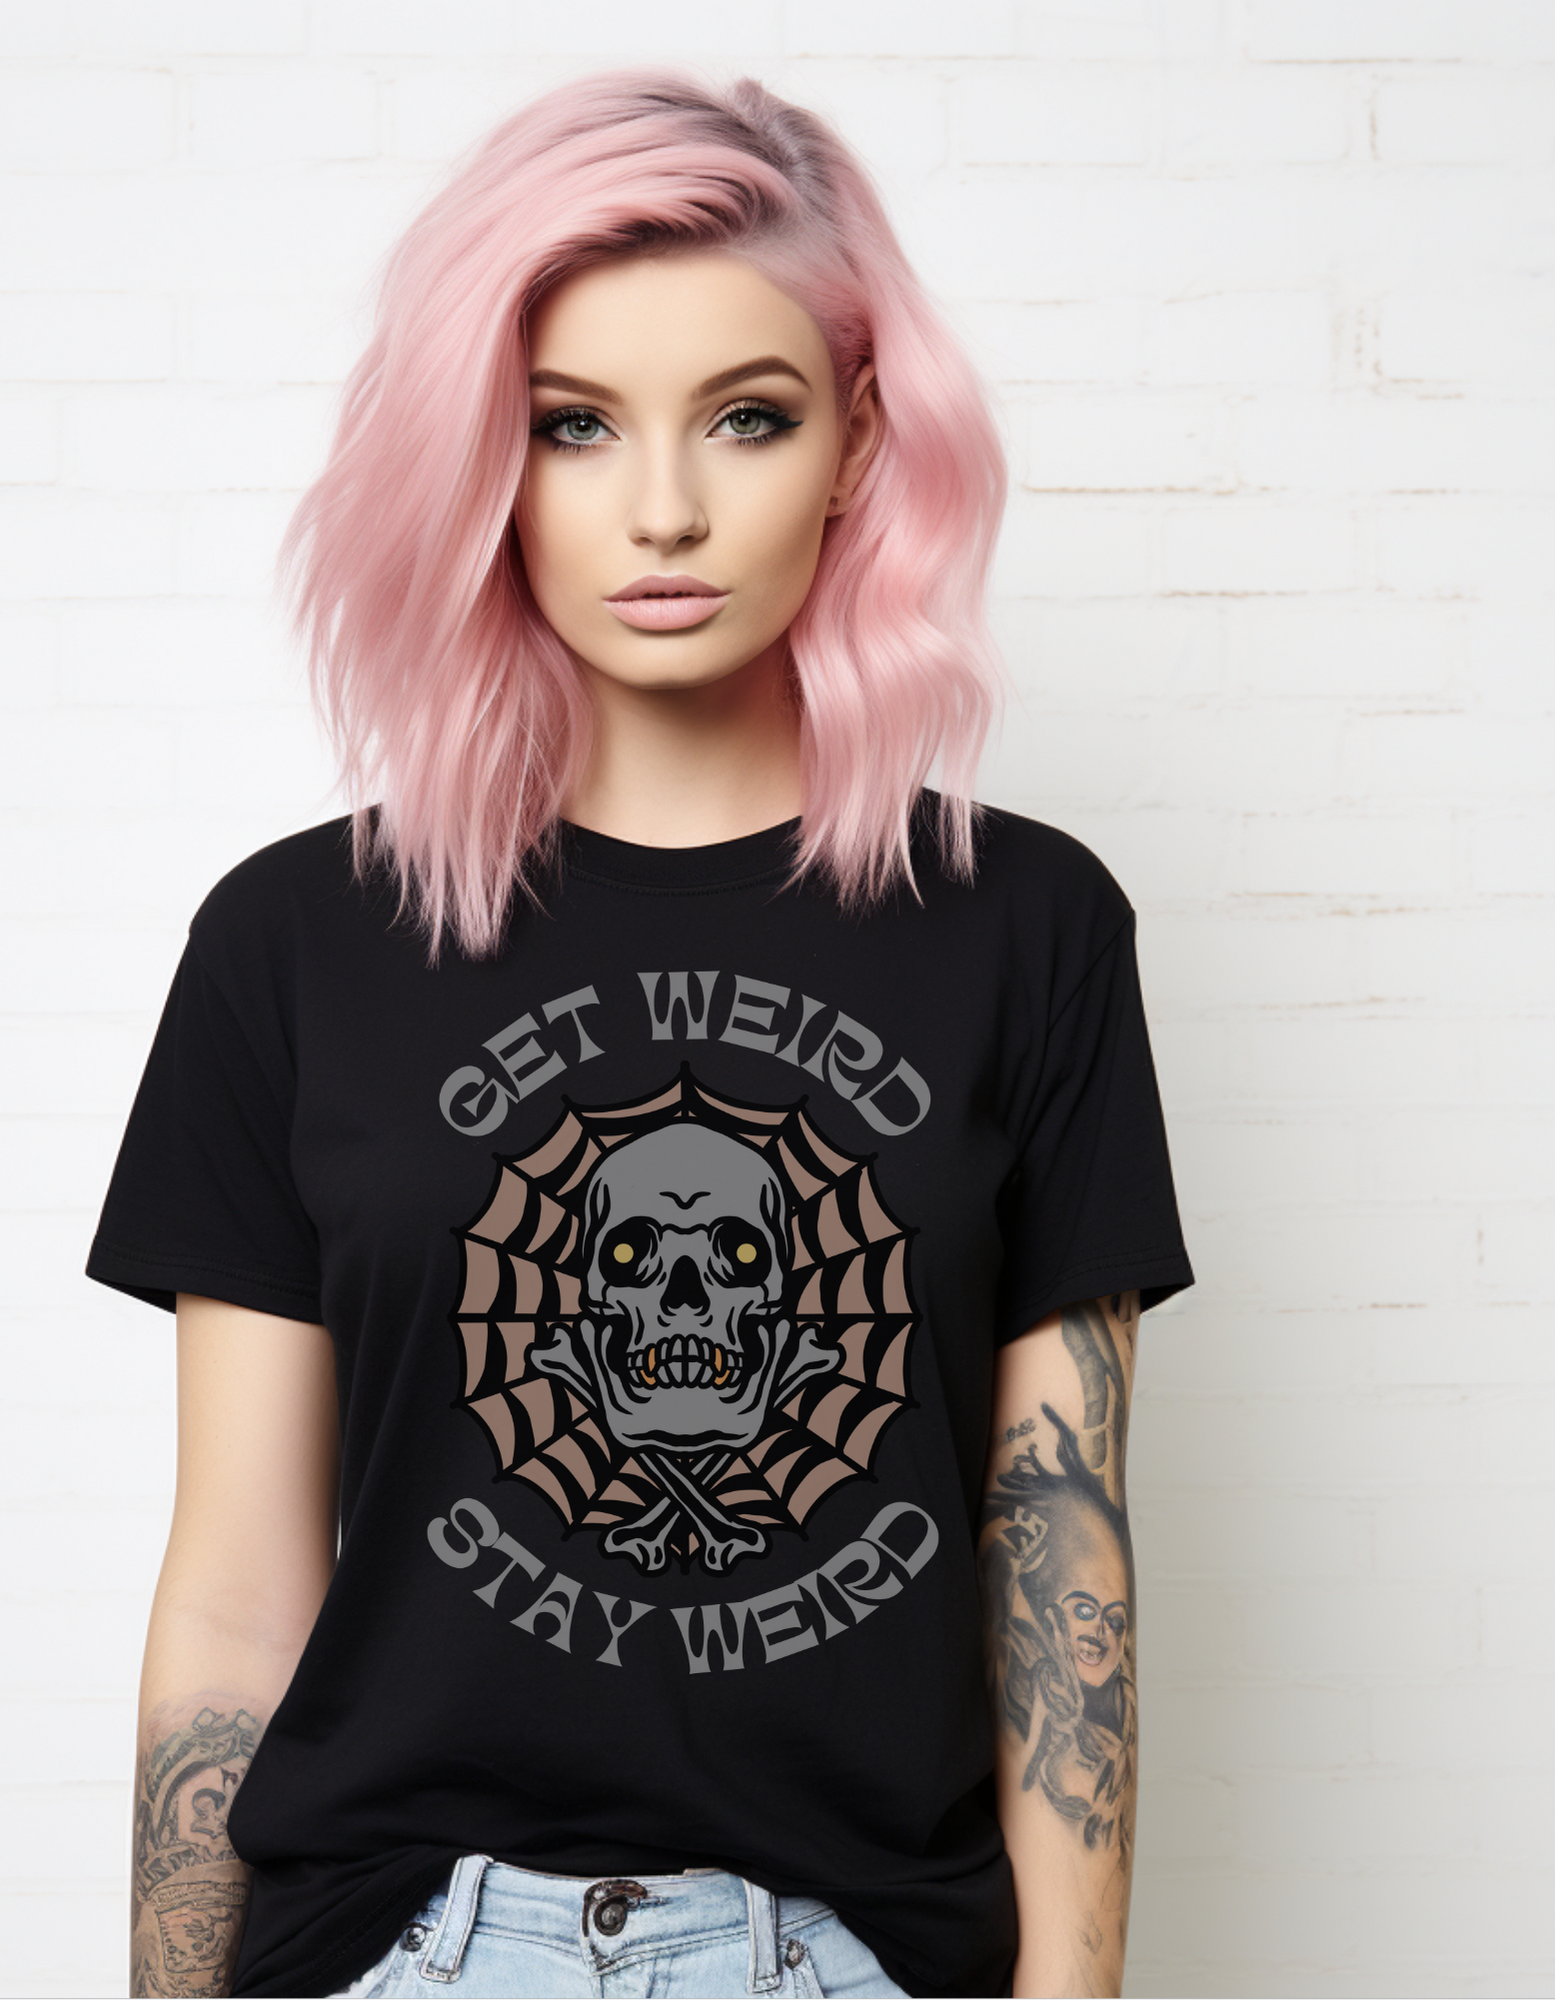 Get Weird Stay Weird Tattoo T-shirt / Traditional Tattoo Tee Shirt / Punk Rock Clothing Tshirt Rockabilly Psychobilly Freak Goth - Foxlark Crystal Jewelry